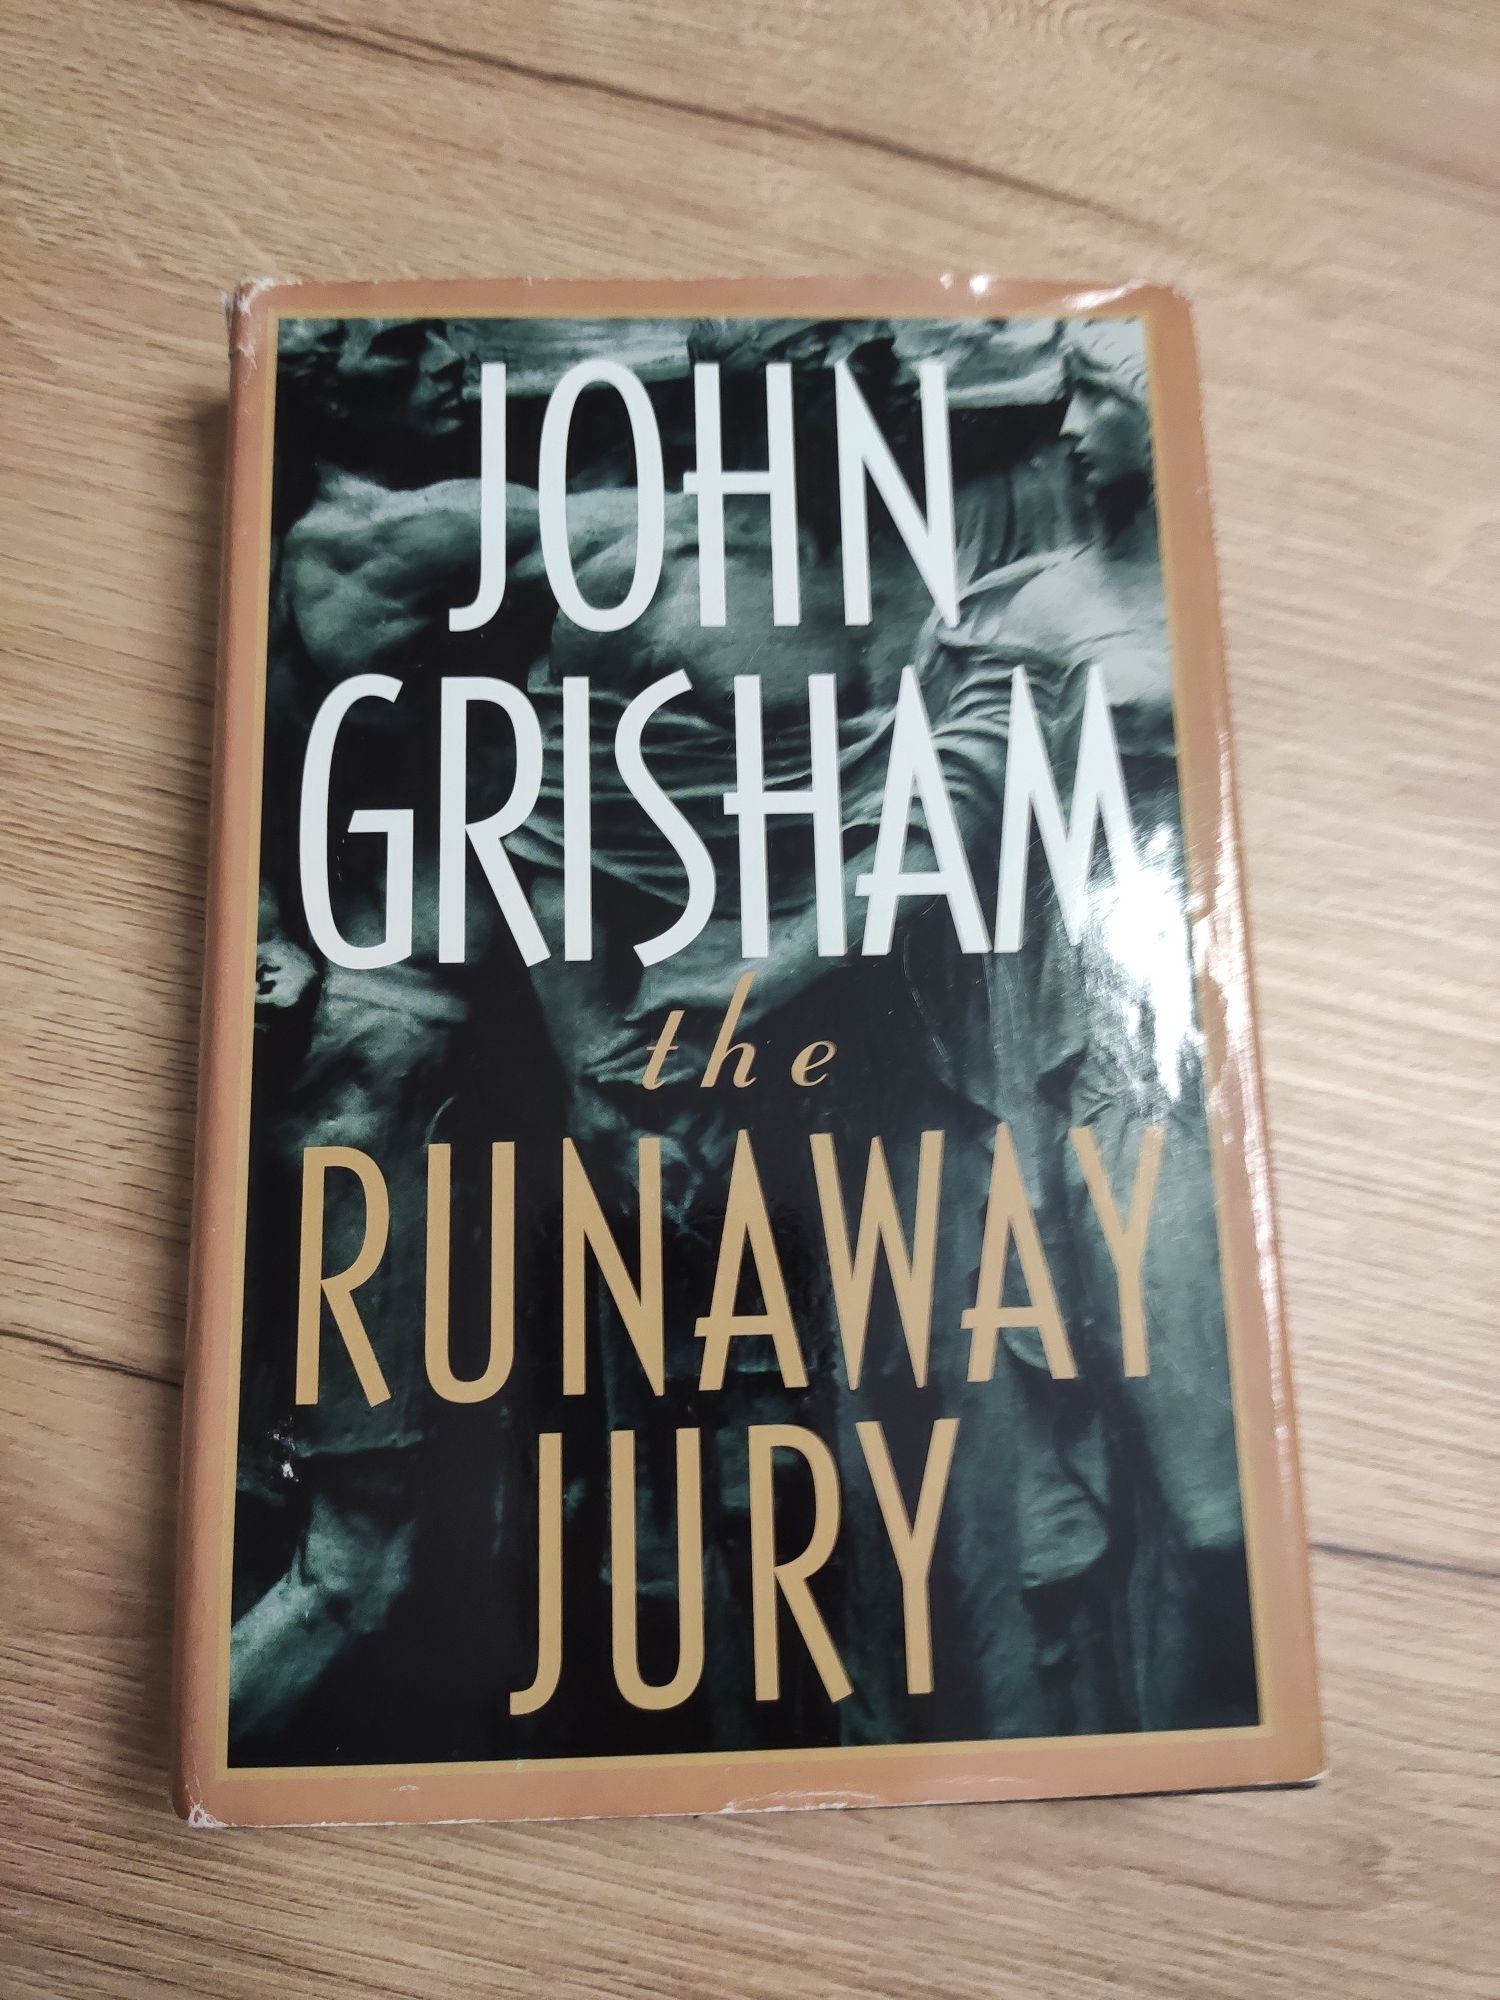 John Grisham - The runaway jury